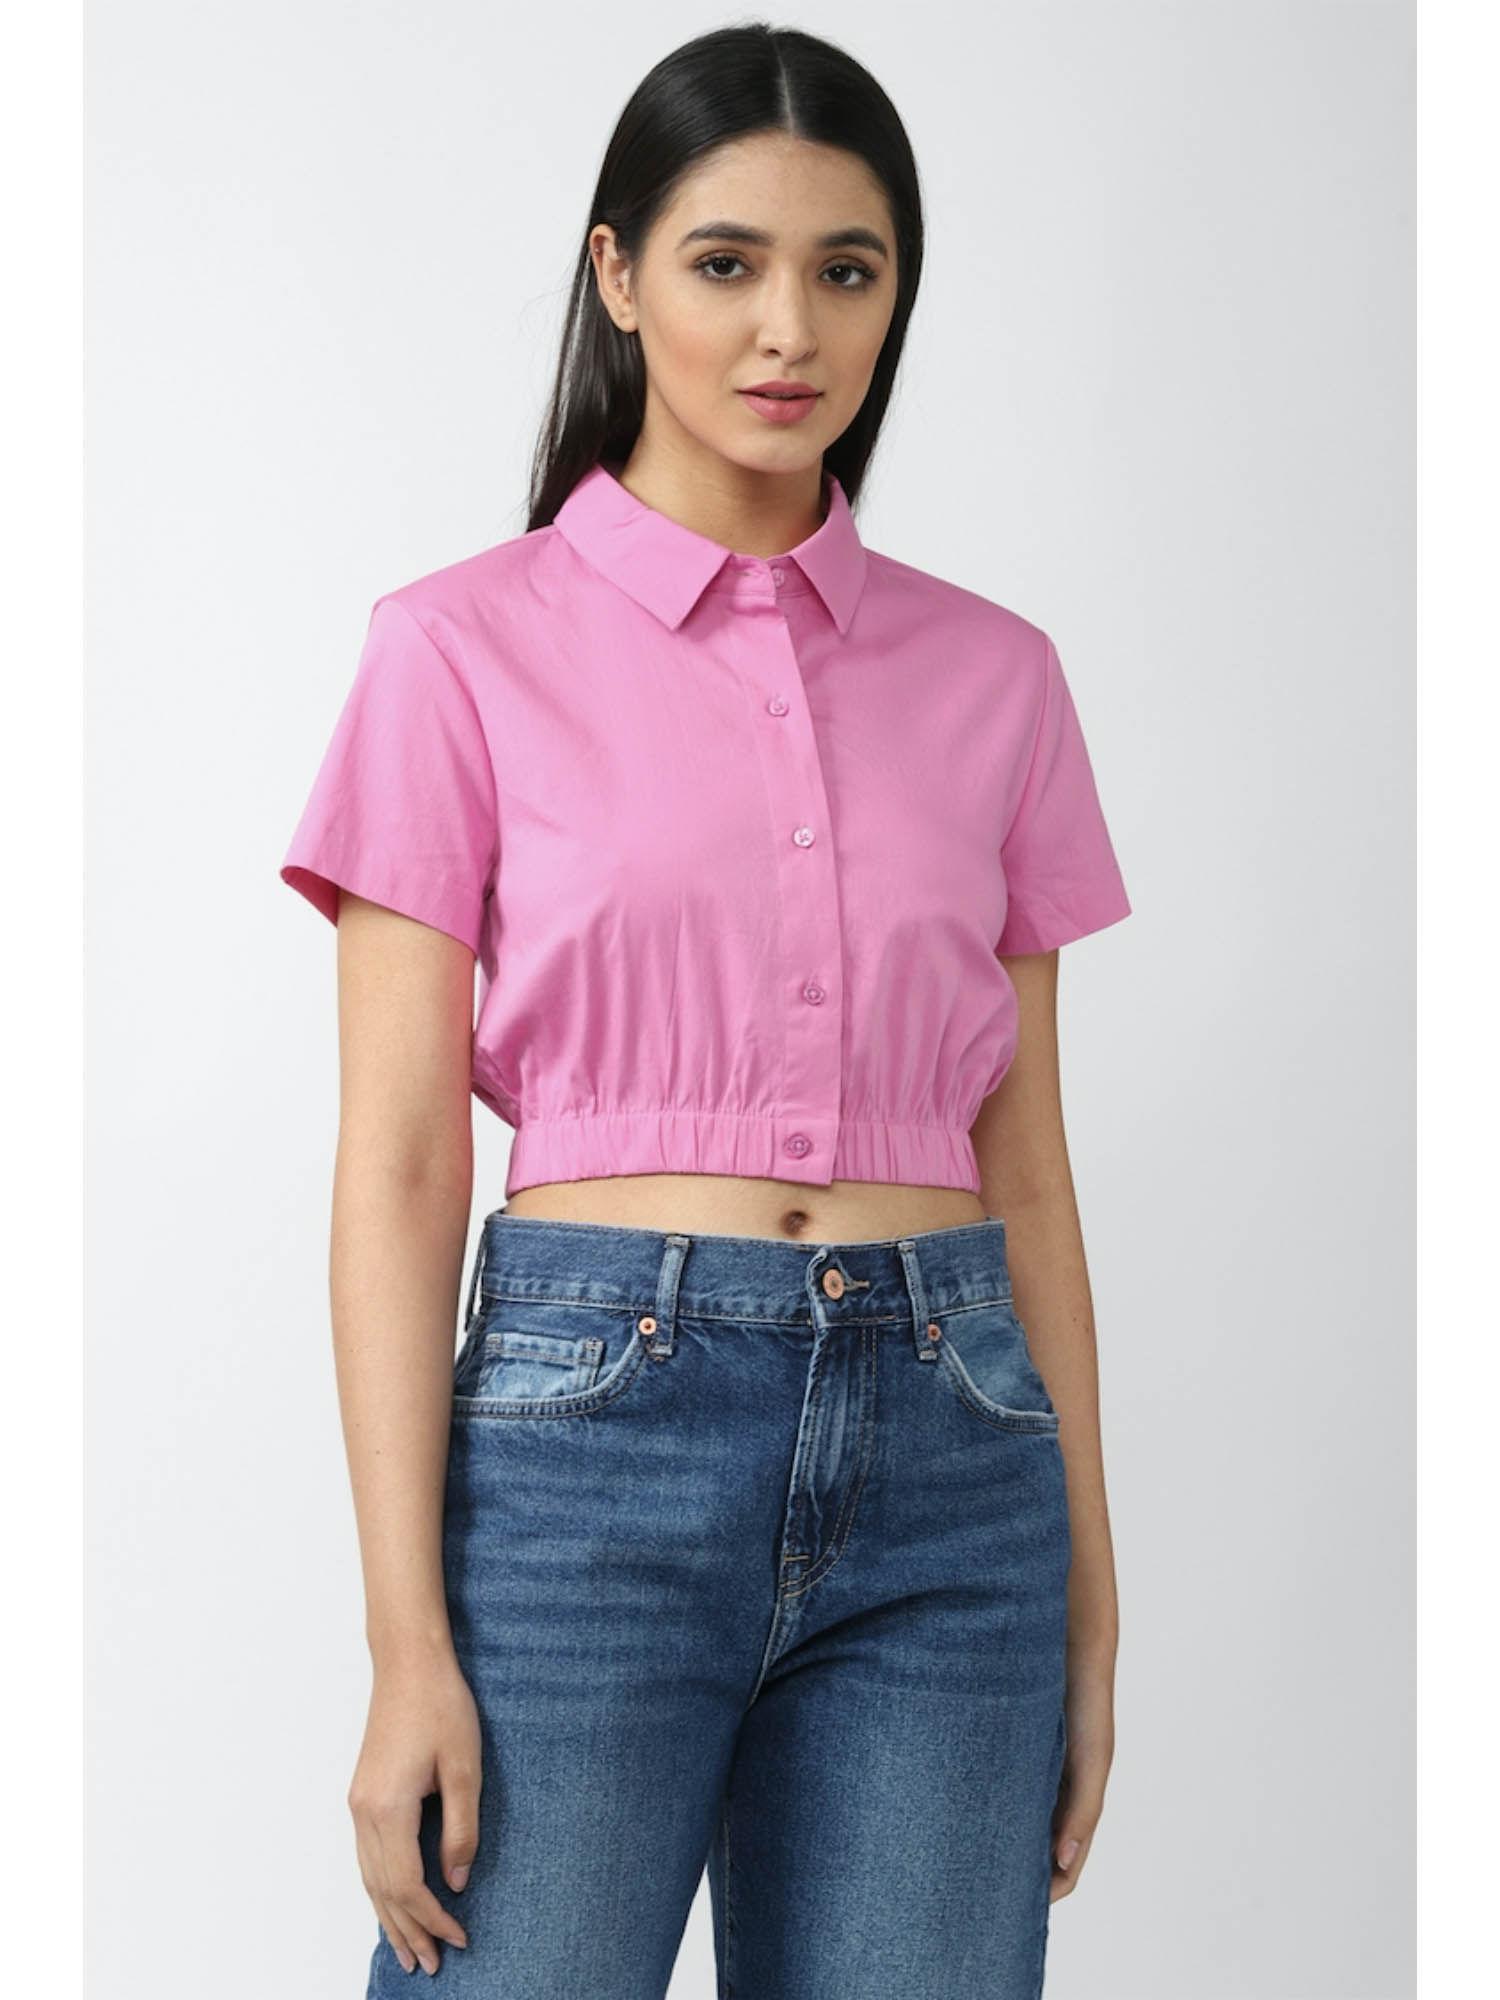 women solid pink shirt